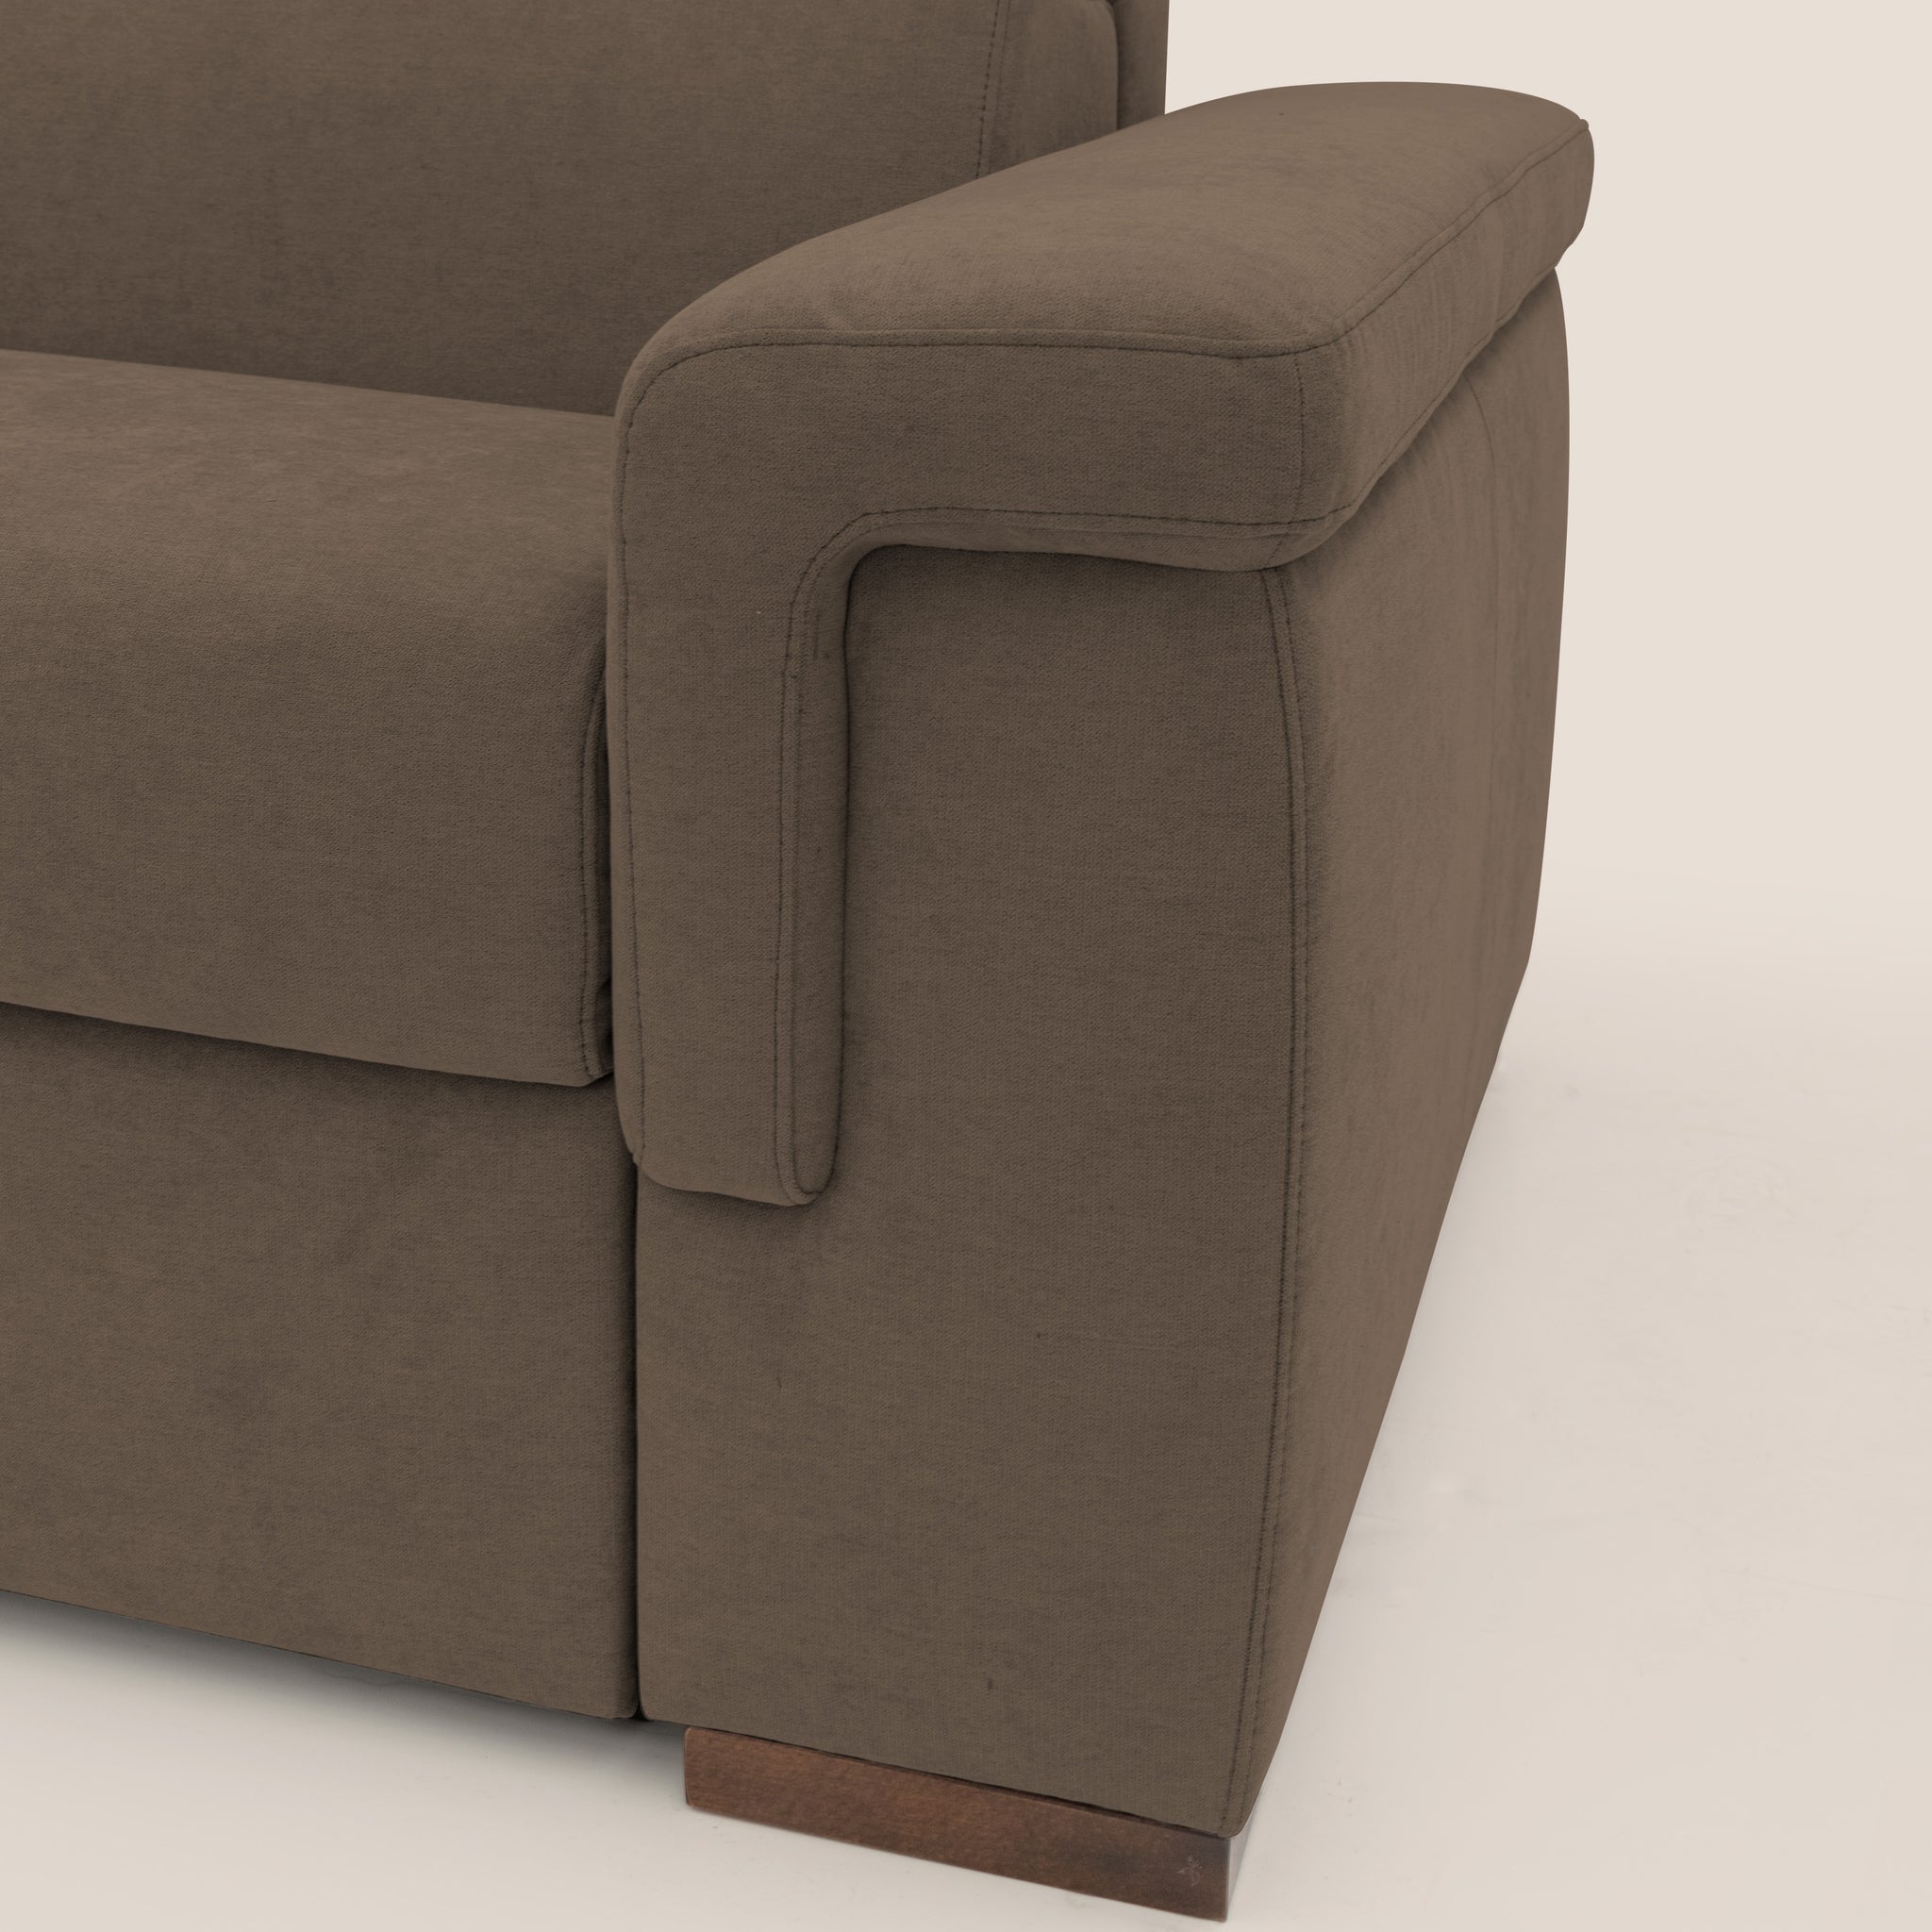 Giunone divano letto con materasso alto 18 cm e poggiatesta reclinabili in tessuto impermeabile T02